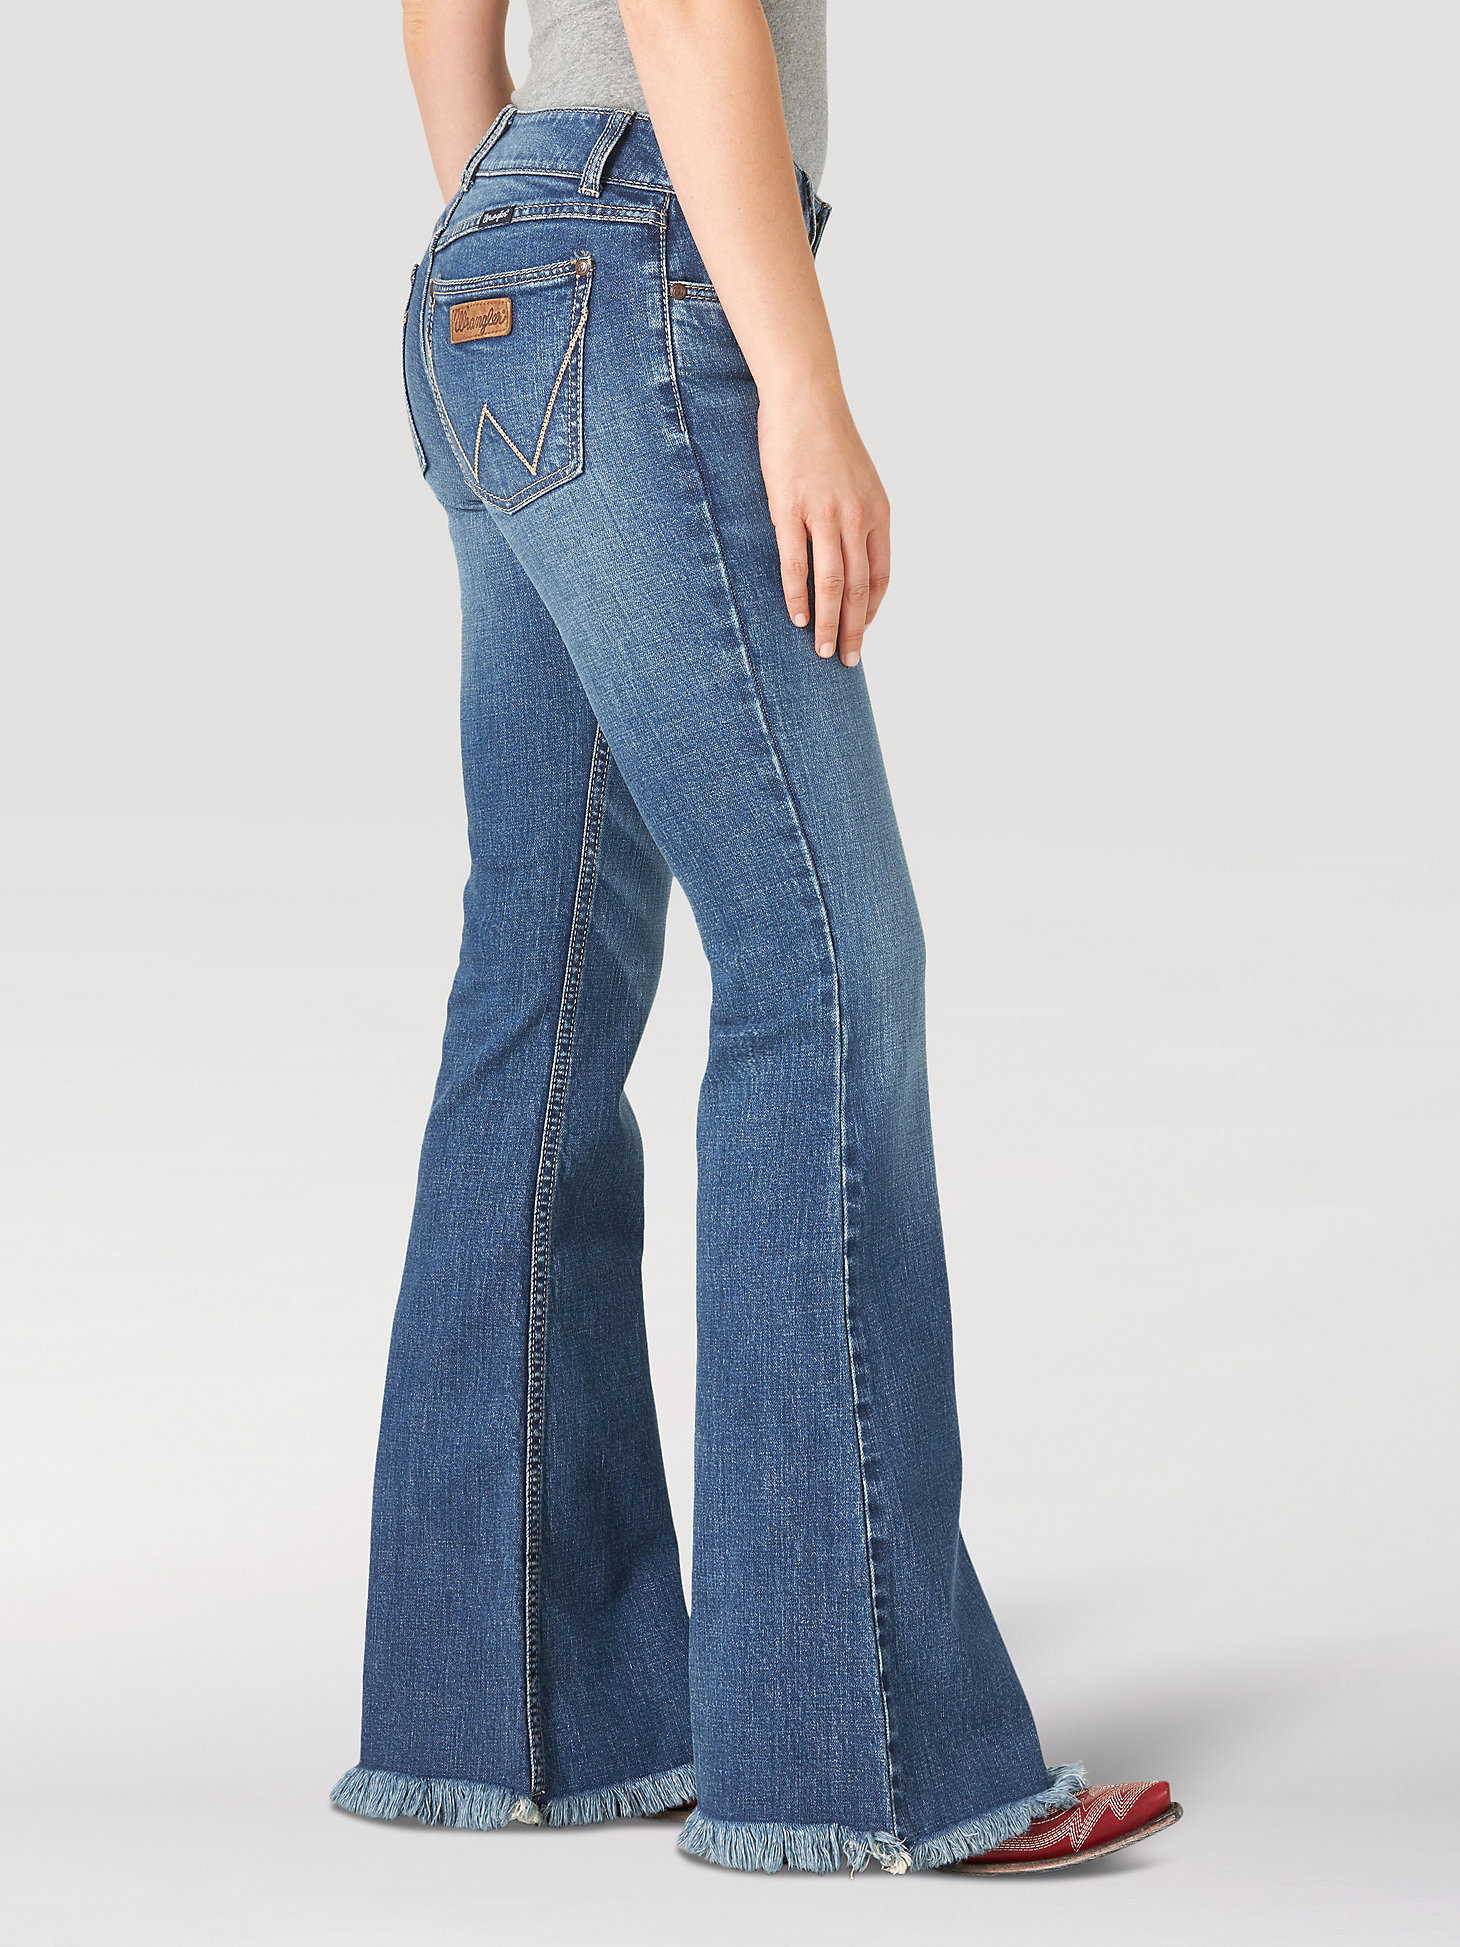 Women's Wrangler Retro® Mae Flare Jean in Desiree alternative view 1